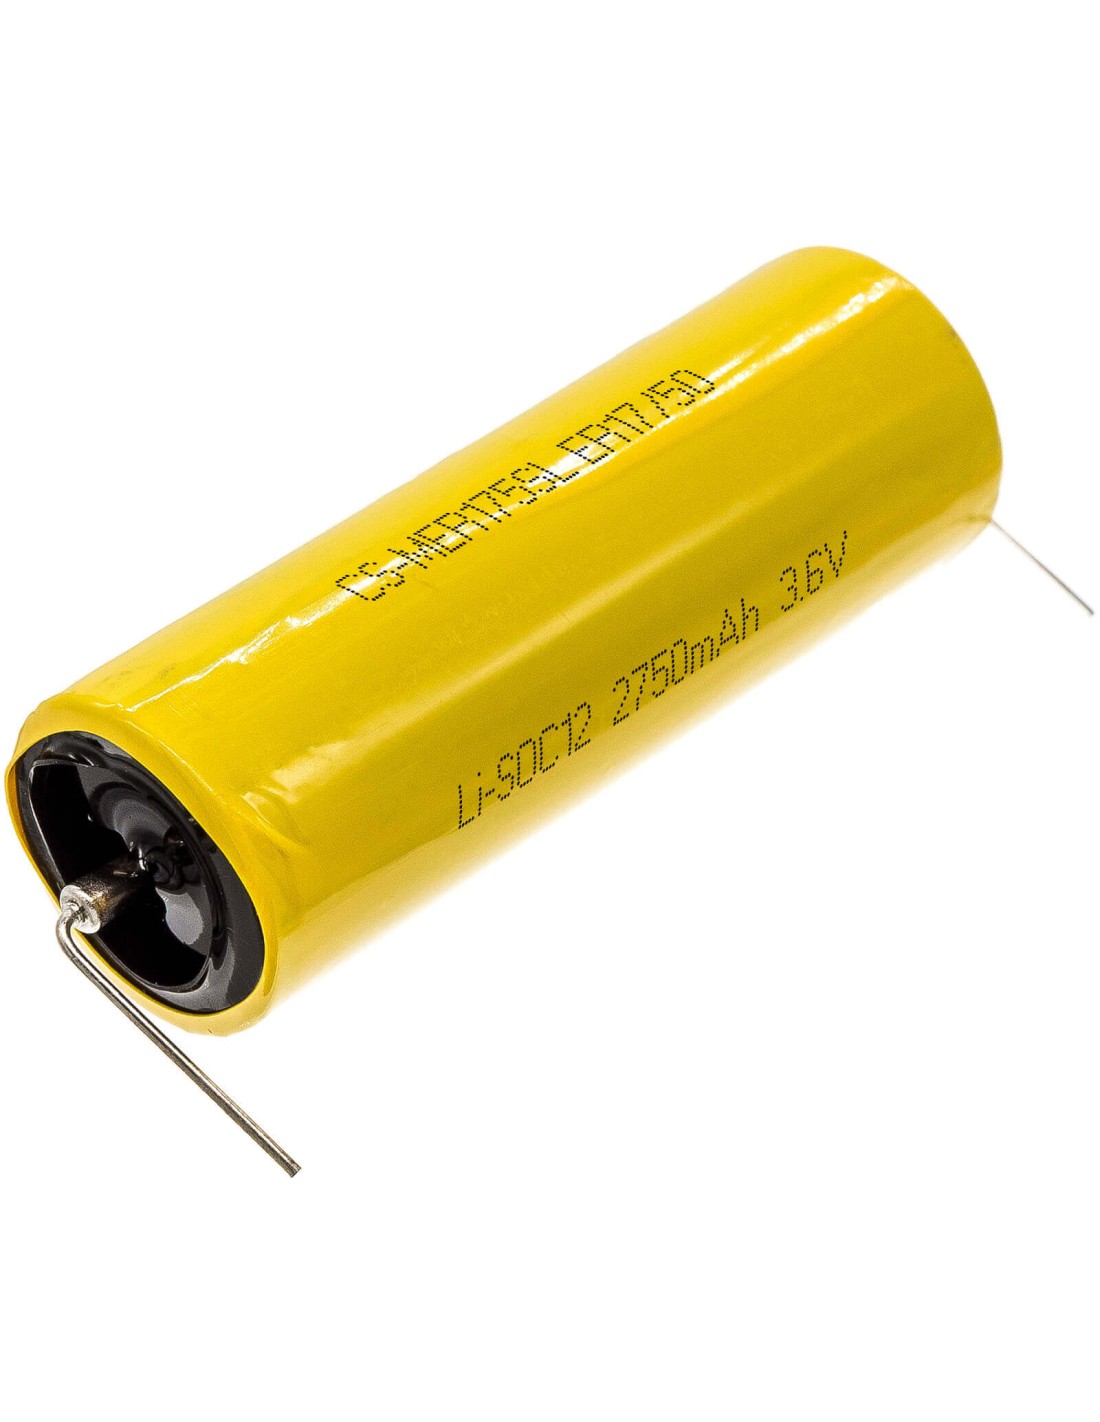 Battery for Maxell, Er17/50 3.6V, 2750mAh - 9.90Wh